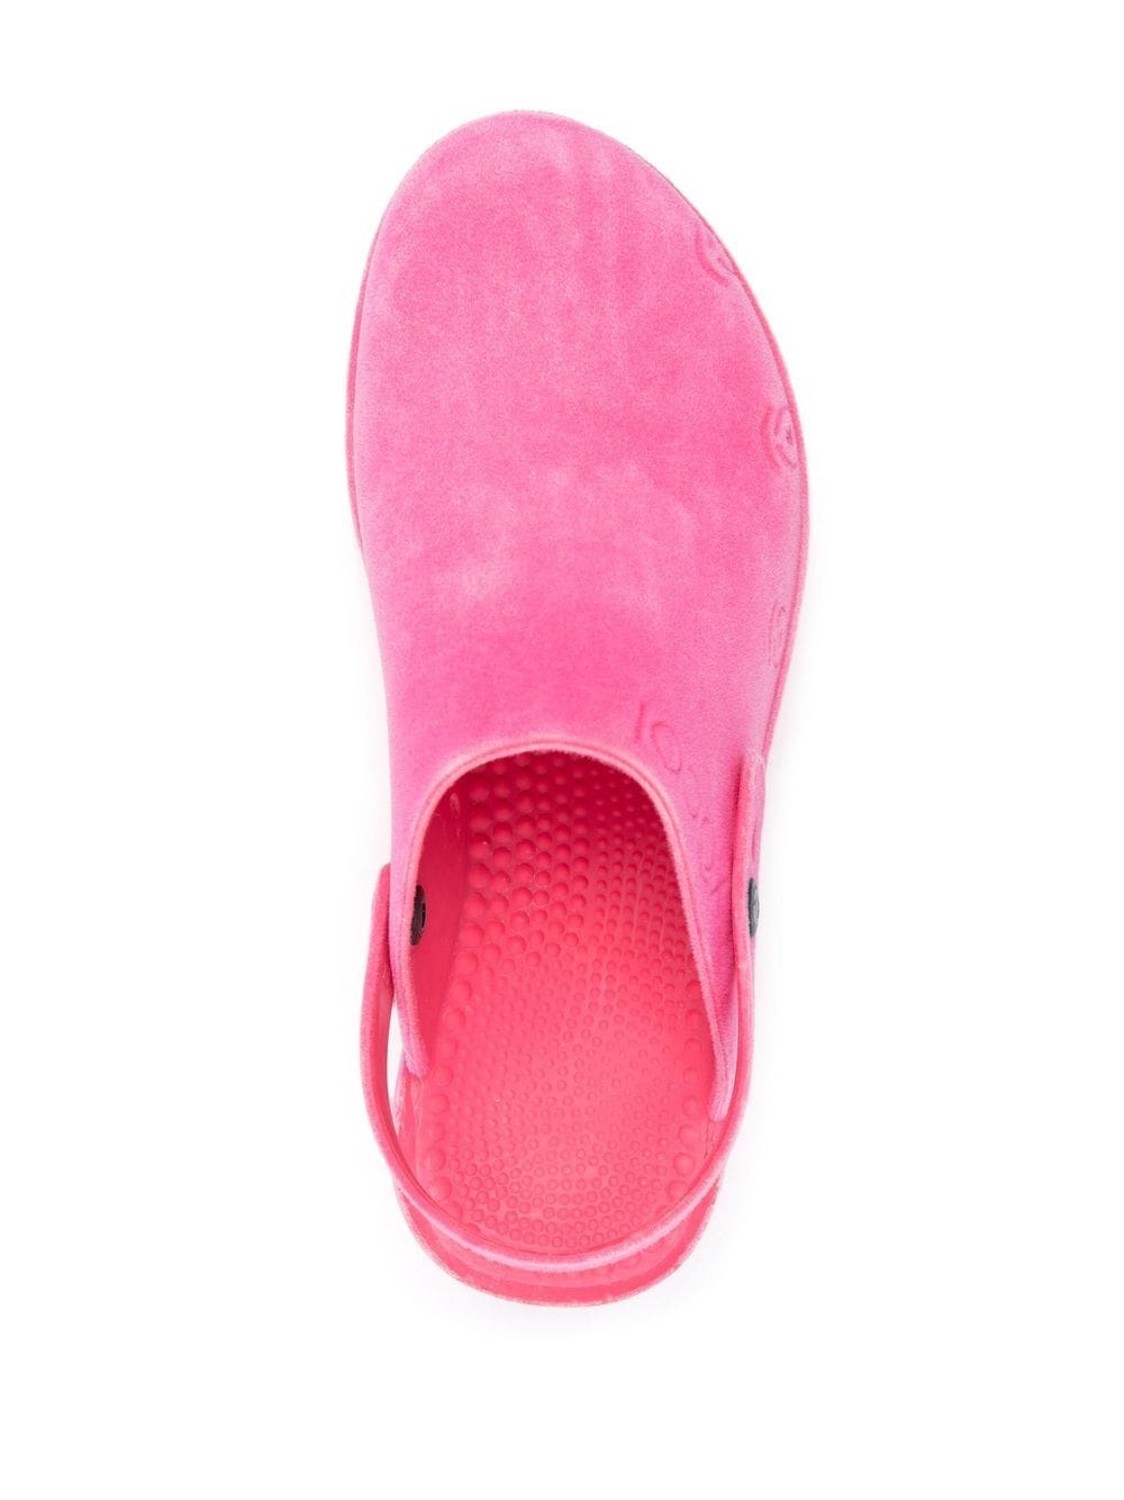 shop Xocoi  Scarpe: Scarpe Xocoi, zoccoli in gomma riciclata, cinturino regolabile con bottone, bocchette di ventilazione laterali, suola interna dentata per una maggiore comodità, in color rosa, in velluto lavato.


Suola: 6 cm. number 2436